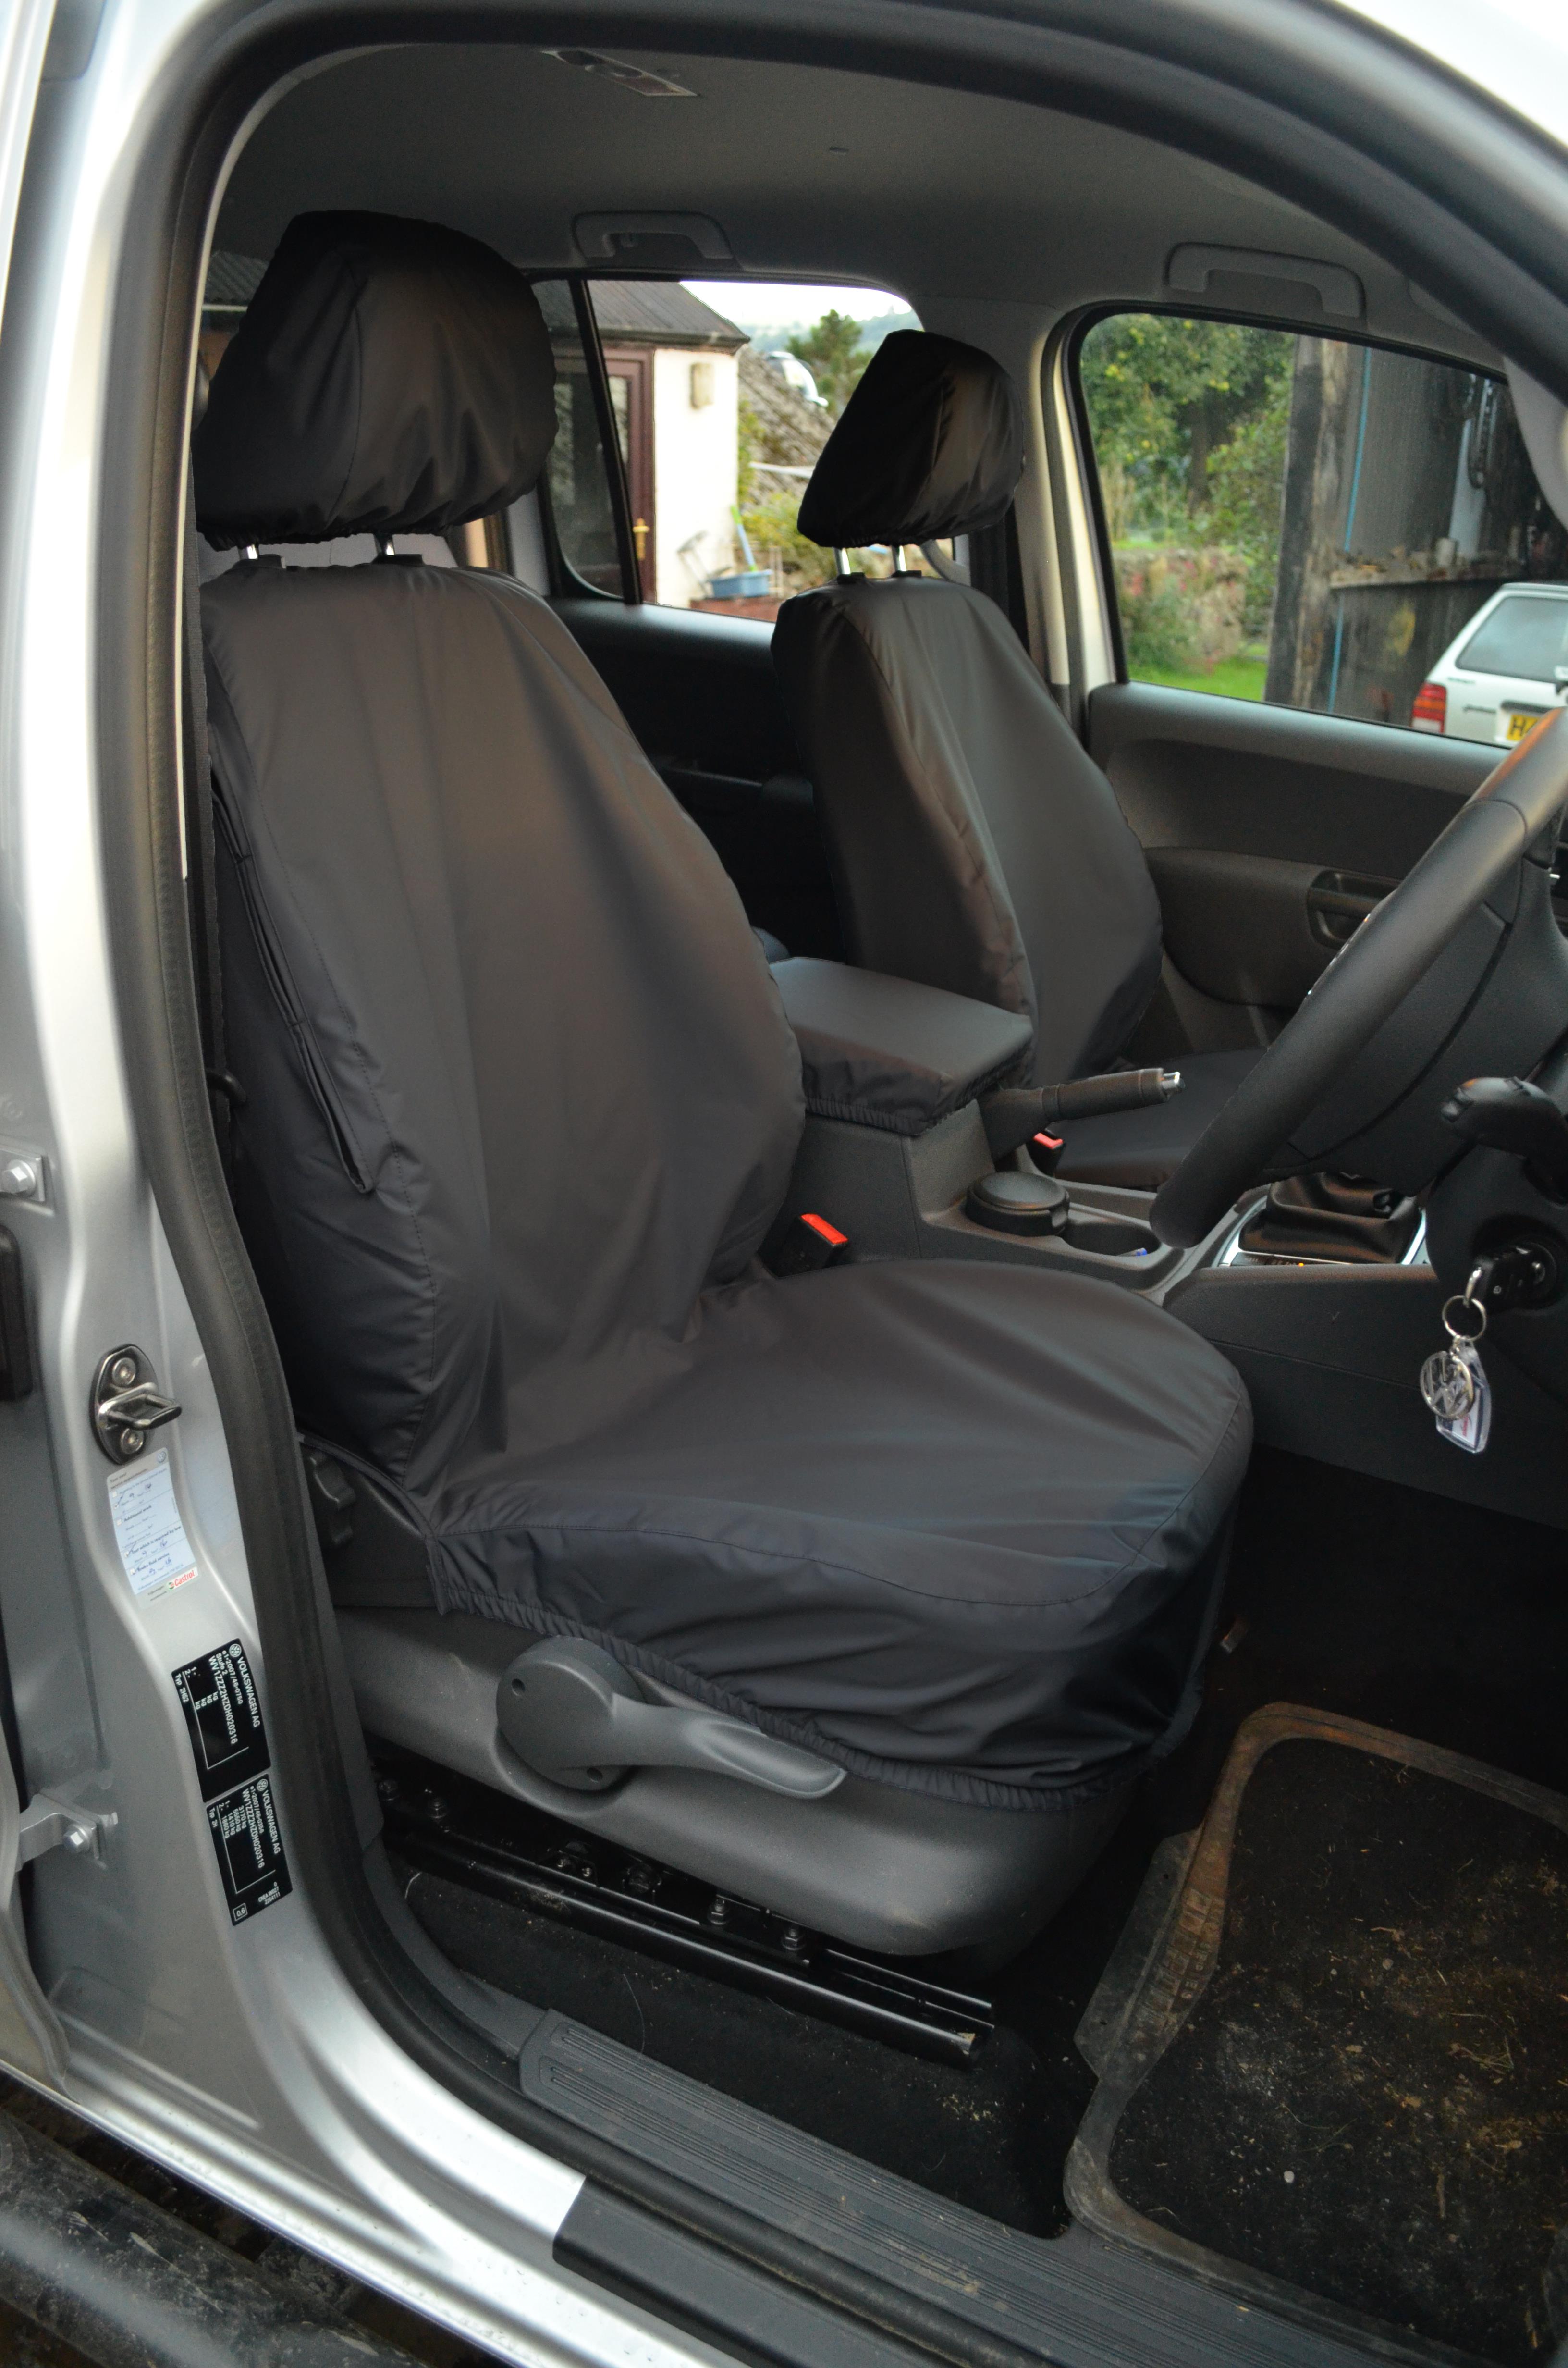 Volkswagen Amarok DoubleCab interior specifications